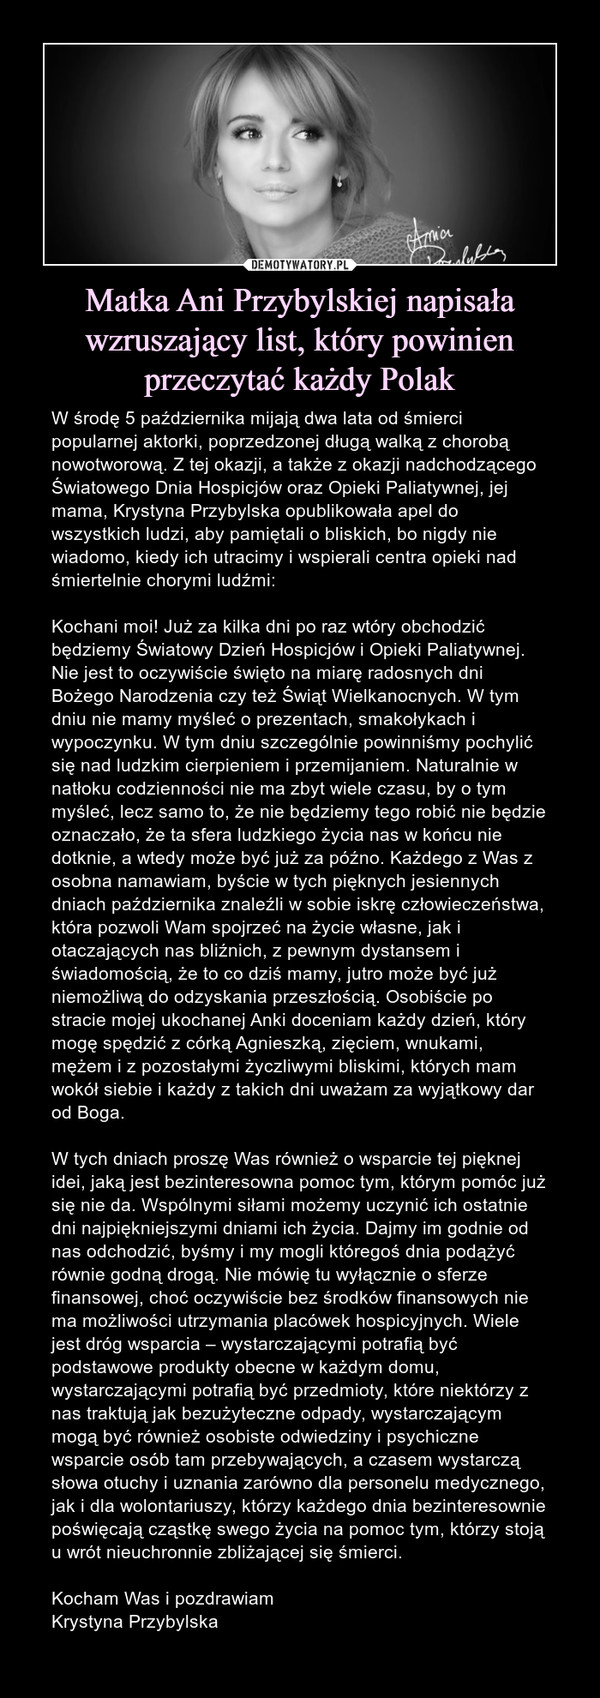 Matka Ani Przybylskiej napisała wzruszający list, który powinien przeczytać każdy Polak – W środę 5 października mijają dwa lata od śmierci popularnej aktorki, poprzedzonej długą walką z chorobą nowotworową. Z tej okazji, a także z okazji nadchodzącego Światowego Dnia Hospicjów oraz Opieki Paliatywnej, jej mama, Krystyna Przybylska opublikowała apel do wszystkich ludzi, aby pamiętali o bliskich, bo nigdy nie wiadomo, kiedy ich utracimy i wspierali centra opieki nad śmiertelnie chorymi ludźmi:Kochani moi! Już za kilka dni po raz wtóry obchodzić będziemy Światowy Dzień Hospicjów i Opieki Paliatywnej. Nie jest to oczywiście święto na miarę radosnych dni Bożego Narodzenia czy też Świąt Wielkanocnych. W tym dniu nie mamy myśleć o prezentach, smakołykach i wypoczynku. W tym dniu szczególnie powinniśmy pochylić się nad ludzkim cierpieniem i przemijaniem. Naturalnie w natłoku codzienności nie ma zbyt wiele czasu, by o tym myśleć, lecz samo to, że nie będziemy tego robić nie będzie oznaczało, że ta sfera ludzkiego życia nas w końcu nie dotknie, a wtedy może być już za późno. Każdego z Was z osobna namawiam, byście w tych pięknych jesiennych dniach października znaleźli w sobie iskrę człowieczeństwa, która pozwoli Wam spojrzeć na życie własne, jak i otaczających nas bliźnich, z pewnym dystansem i świadomością, że to co dziś mamy, jutro może być już niemożliwą do odzyskania przeszłością. Osobiście po stracie mojej ukochanej Anki doceniam każdy dzień, który mogę spędzić z córką Agnieszką, zięciem, wnukami, mężem i z pozostałymi życzliwymi bliskimi, których mam wokół siebie i każdy z takich dni uważam za wyjątkowy dar od Boga.W tych dniach proszę Was również o wsparcie tej pięknej idei, jaką jest bezinteresowna pomoc tym, którym pomóc już się nie da. Wspólnymi siłami możemy uczynić ich ostatnie dni najpiękniejszymi dniami ich życia. Dajmy im godnie od nas odchodzić, byśmy i my mogli któregoś dnia podążyć równie godną drogą. Nie mówię tu wyłącznie o sferze finansowej, choć oczywiście bez środków finansowych nie ma możliwości utrzymania placówek hospicyjnych. Wiele jest dróg wsparcia – wystarczającymi potrafią być podstawowe produkty obecne w każdym domu, wystarczającymi potrafią być przedmioty, które niektórzy z nas traktują jak bezużyteczne odpady, wystarczającym mogą być również osobiste odwiedziny i psychiczne wsparcie osób tam przebywających, a czasem wystarczą słowa otuchy i uznania zarówno dla personelu medycznego, jak i dla wolontariuszy, którzy każdego dnia bezinteresownie poświęcają cząstkę swego życia na pomoc tym, którzy stoją u wrót nieuchronnie zbliżającej się śmierci.Kocham Was i pozdrawiamKrystyna Przybylska W środę 5 października mijają dwa lata od śmierci popularnej aktorki, poprzedzonej długą walką z chorobą nowotworową. Z tej okazji, a także z okazji nadchodzącego Światowego Dnia Hospicjów oraz Opieki Paliatywnej, jej mama, Krystyna Przybylska opublikowała apel do wszystkich ludzi, aby pamiętali o bliskich, bo nigdy nie wiadomo, kiedy ich utracimy i wspierali centra opieki nad śmiertelnie chorymi ludźmi:Kochani moi! Już za kilka dni po raz wtóry obchodzić będziemy Światowy Dzień Hospicjów i Opieki Paliatywnej. Nie jest to oczywiście święto na miarę radosnych dni Bożego Narodzenia czy też Świąt Wielkanocnych. W tym dniu nie mamy myśleć o prezentach, smakołykach i wypoczynku. W tym dniu szczególnie powinniśmy pochylić się nad ludzkim cierpieniem i przemijaniem. Naturalnie w natłoku codzienności nie ma zbyt wiele czasu, by o tym myśleć, lecz samo to, że nie będziemy tego robić nie będzie oznaczało, że ta sfera ludzkiego życia nas w końcu nie dotknie, a wtedy może być już za późno. Każdego z Was z osobna namawiam, byście w tych pięknych jesiennych dniach października znaleźli w sobie iskrę człowieczeństwa, która pozwoli Wam spojrzeć na życie własne, jak i otaczających nas bliźnich, z pewnym dystansem i świadomością, że to co dziś mamy, jutro może być już niemożliwą do odzyskania przeszłością. Osobiście po stracie mojej ukochanej Anki doceniam każdy dzień, który mogę spędzić z córką Agnieszką, zięciem, wnukami, mężem i z pozostałymi życzliwymi bliskimi, których mam wokół siebie i każdy z takich dni uważam za wyjątkowy dar od Boga.W tych dniach proszę Was również o wsparcie tej pięknej idei, jaką jest bezinteresowna pomoc tym, którym pomóc już się nie da. Wspólnymi siłami możemy uczynić ich ostatnie dni najpiękniejszymi dniami ich życia. Dajmy im godnie od nas odchodzić, byśmy i my mogli któregoś dnia podążyć równie godną drogą. Nie mówię tu wyłącznie o sferze finansowej, choć oczywiście bez środków finansowych nie ma możliwości utrzymania placówek hospicyjnych. Wiele jest dróg wsparcia – wystarczającymi potrafią być podstawowe produkty obecne w każdym domu, wystarczającymi potrafią być przedmioty, które niektórzy z nas traktują jak bezużyteczne odpady, wystarczającym mogą być również osobiste odwiedziny i psychiczne wsparcie osób tam przebywających, a czasem wystarczą słowa otuchy i uznania zarówno dla personelu medycznego, jak i dla wolontariuszy, którzy każdego dnia bezinteresownie poświęcają cząstkę swego życia na pomoc tym, którzy stoją u wrót nieuchronnie zbliżającej się śmierci.Kocham Was i pozdrawiamKrystyna Przybylska